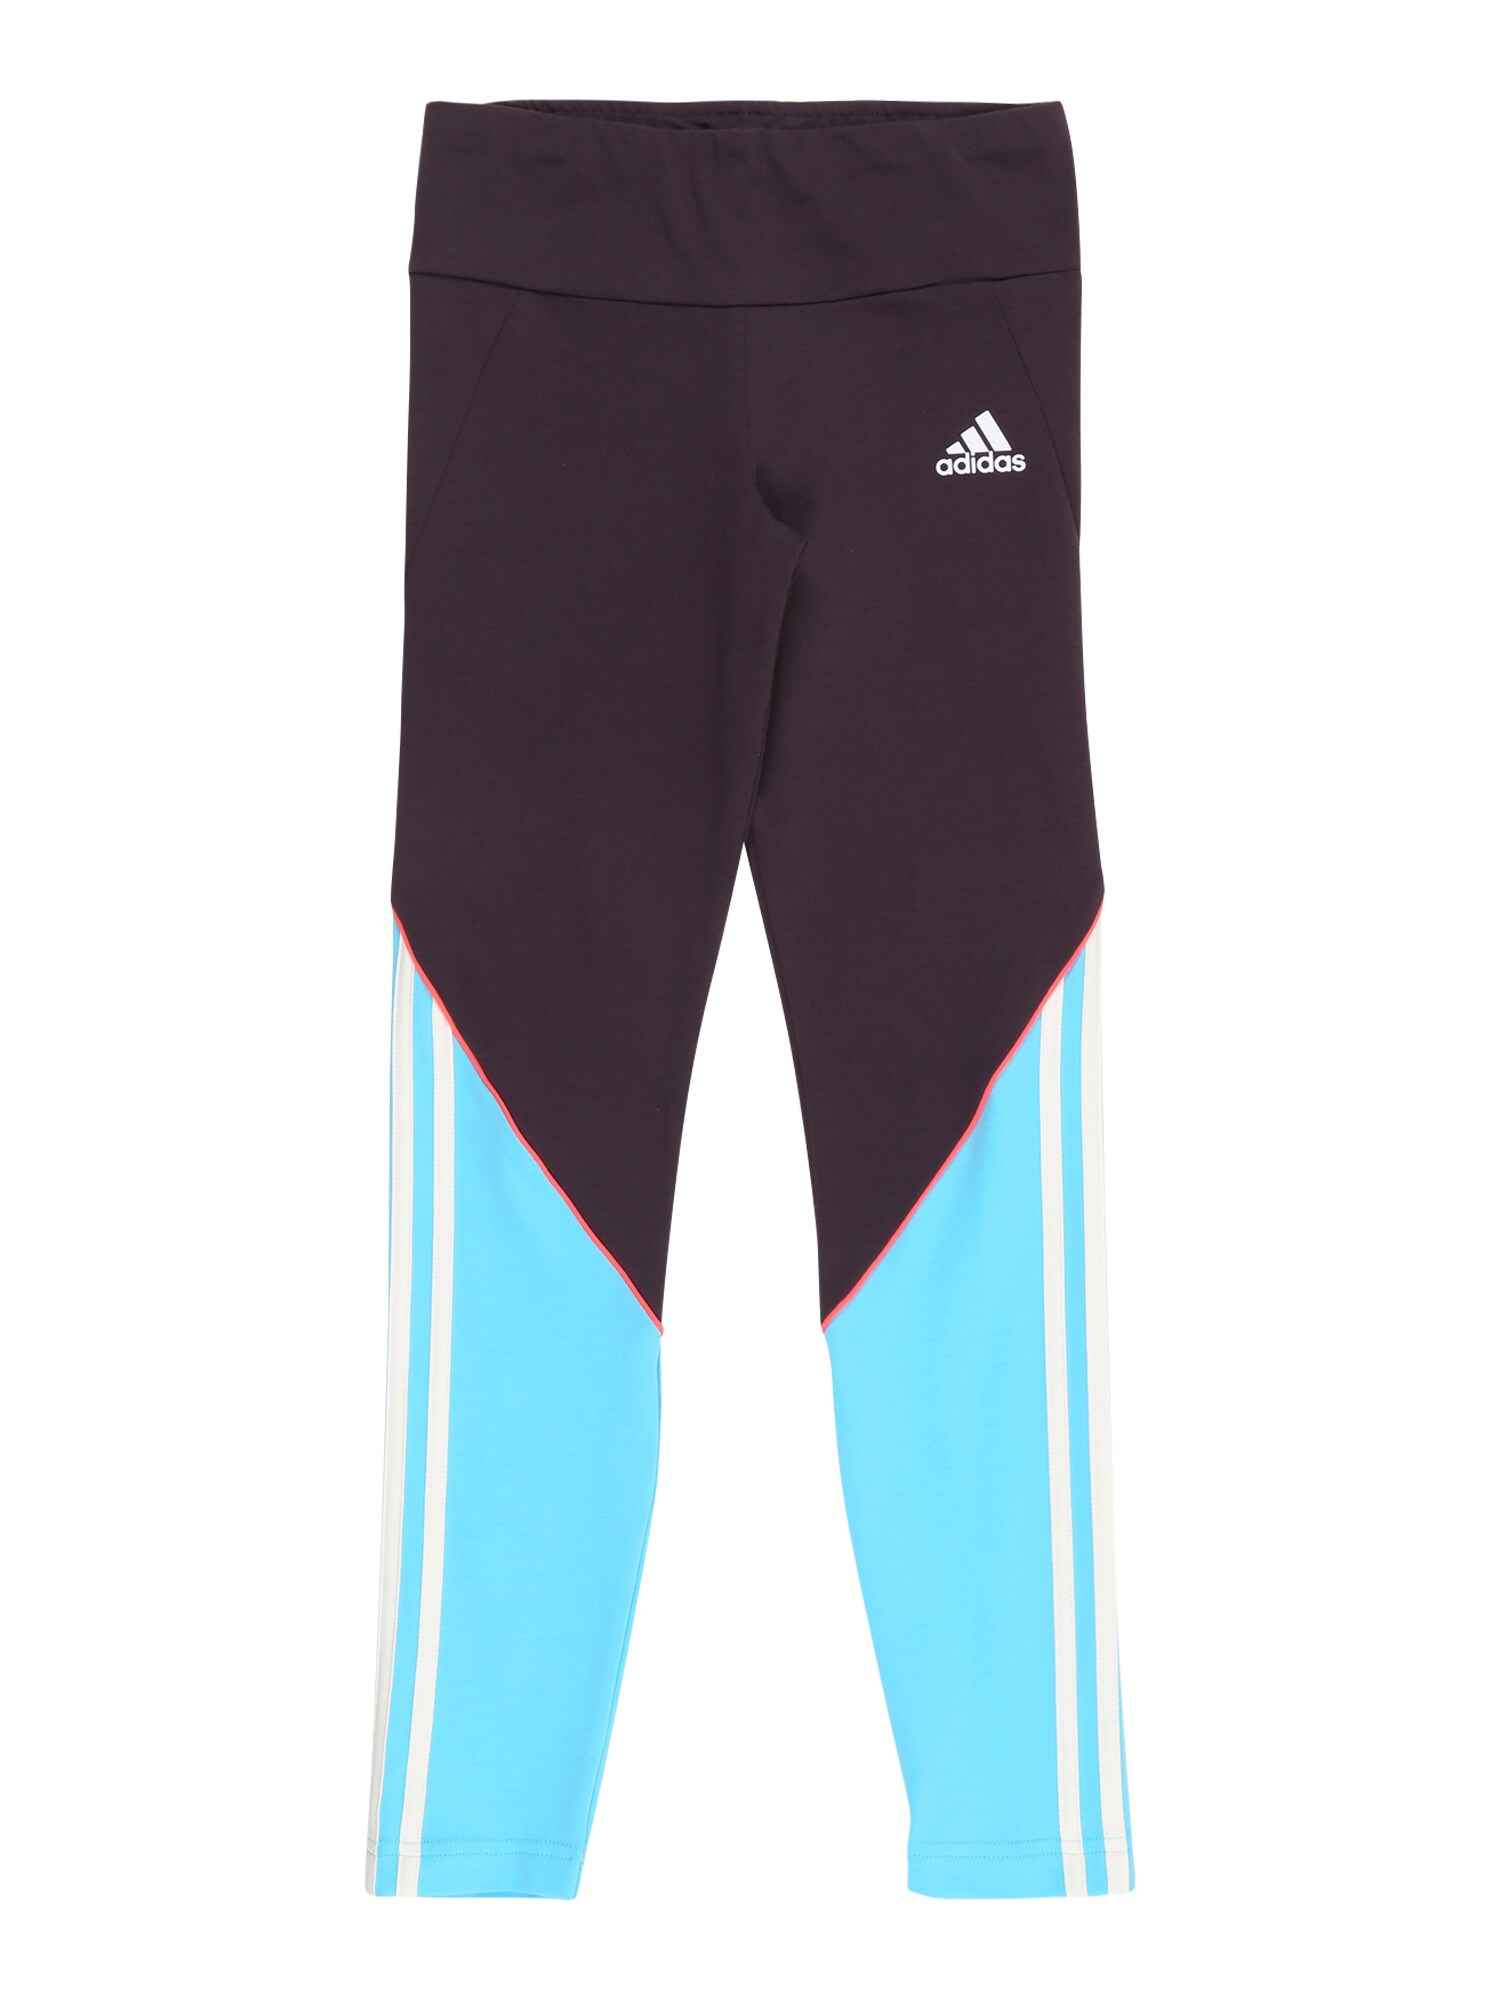 ADIDAS PERFORMANCE Sportinės kelnės 'Bold'  tamsiai violetinė / šviesiai mėlyna / balta